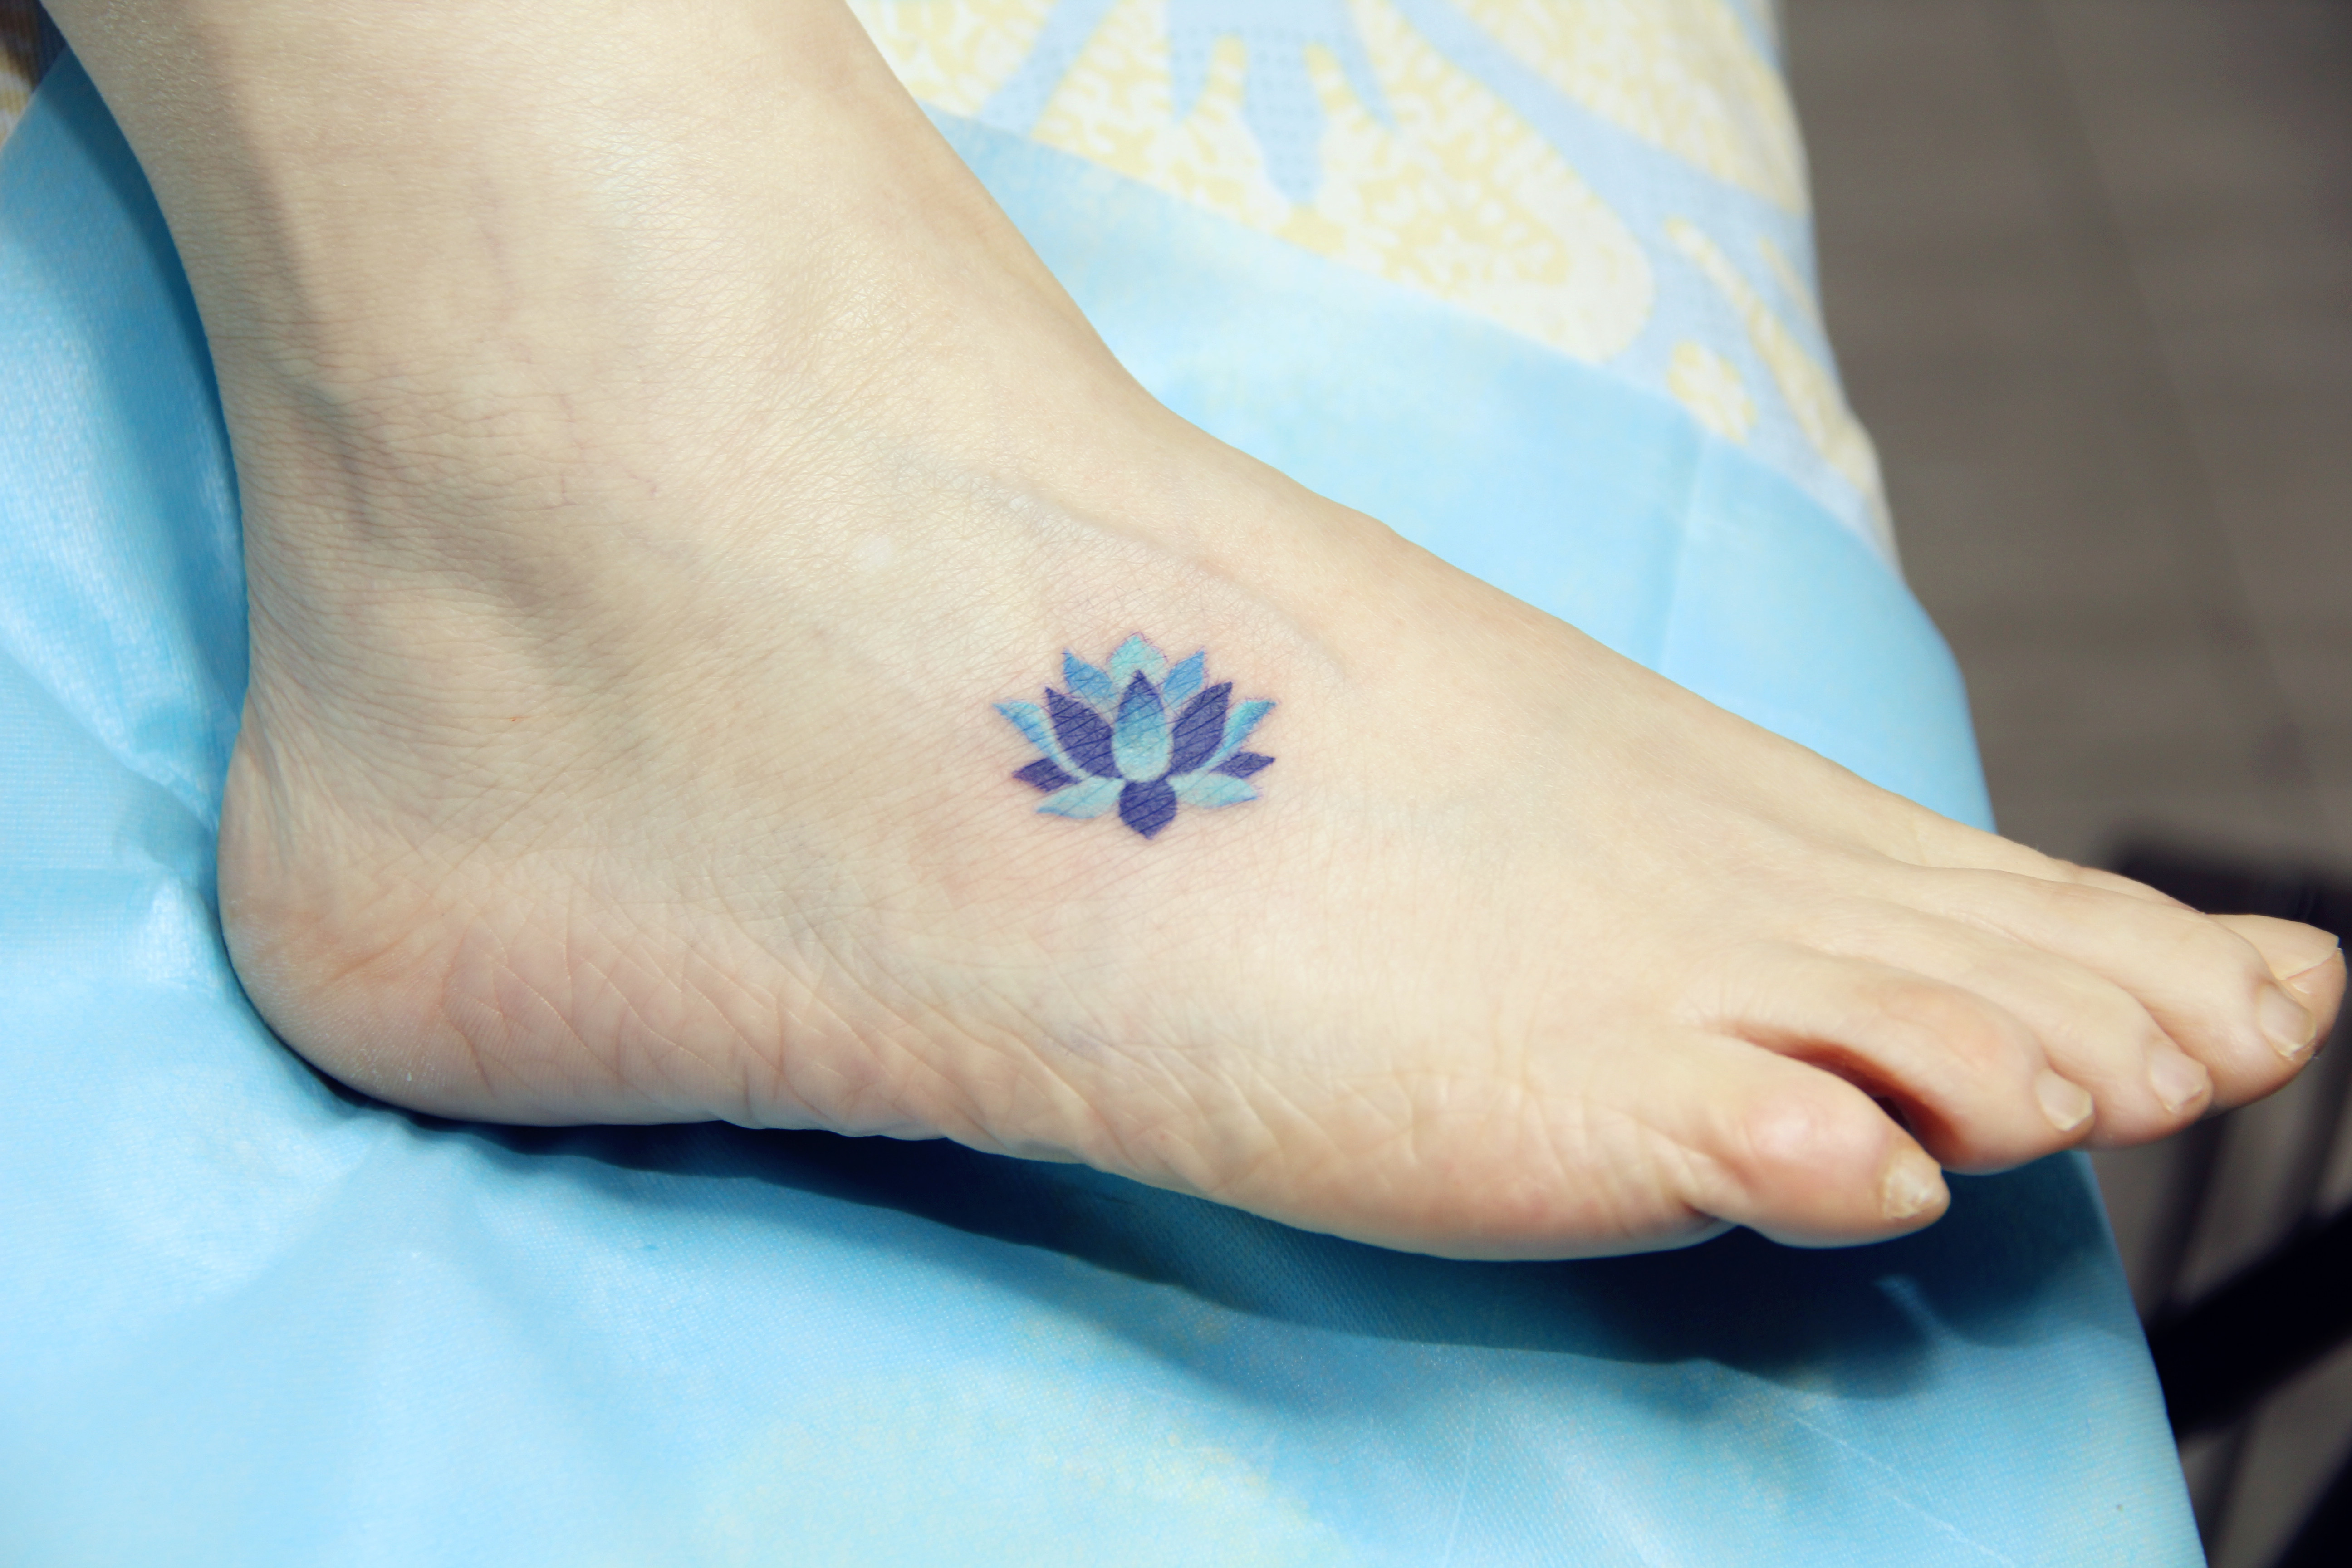 董小姐在脚背处纹刻的精致蓝莲花纹身图案